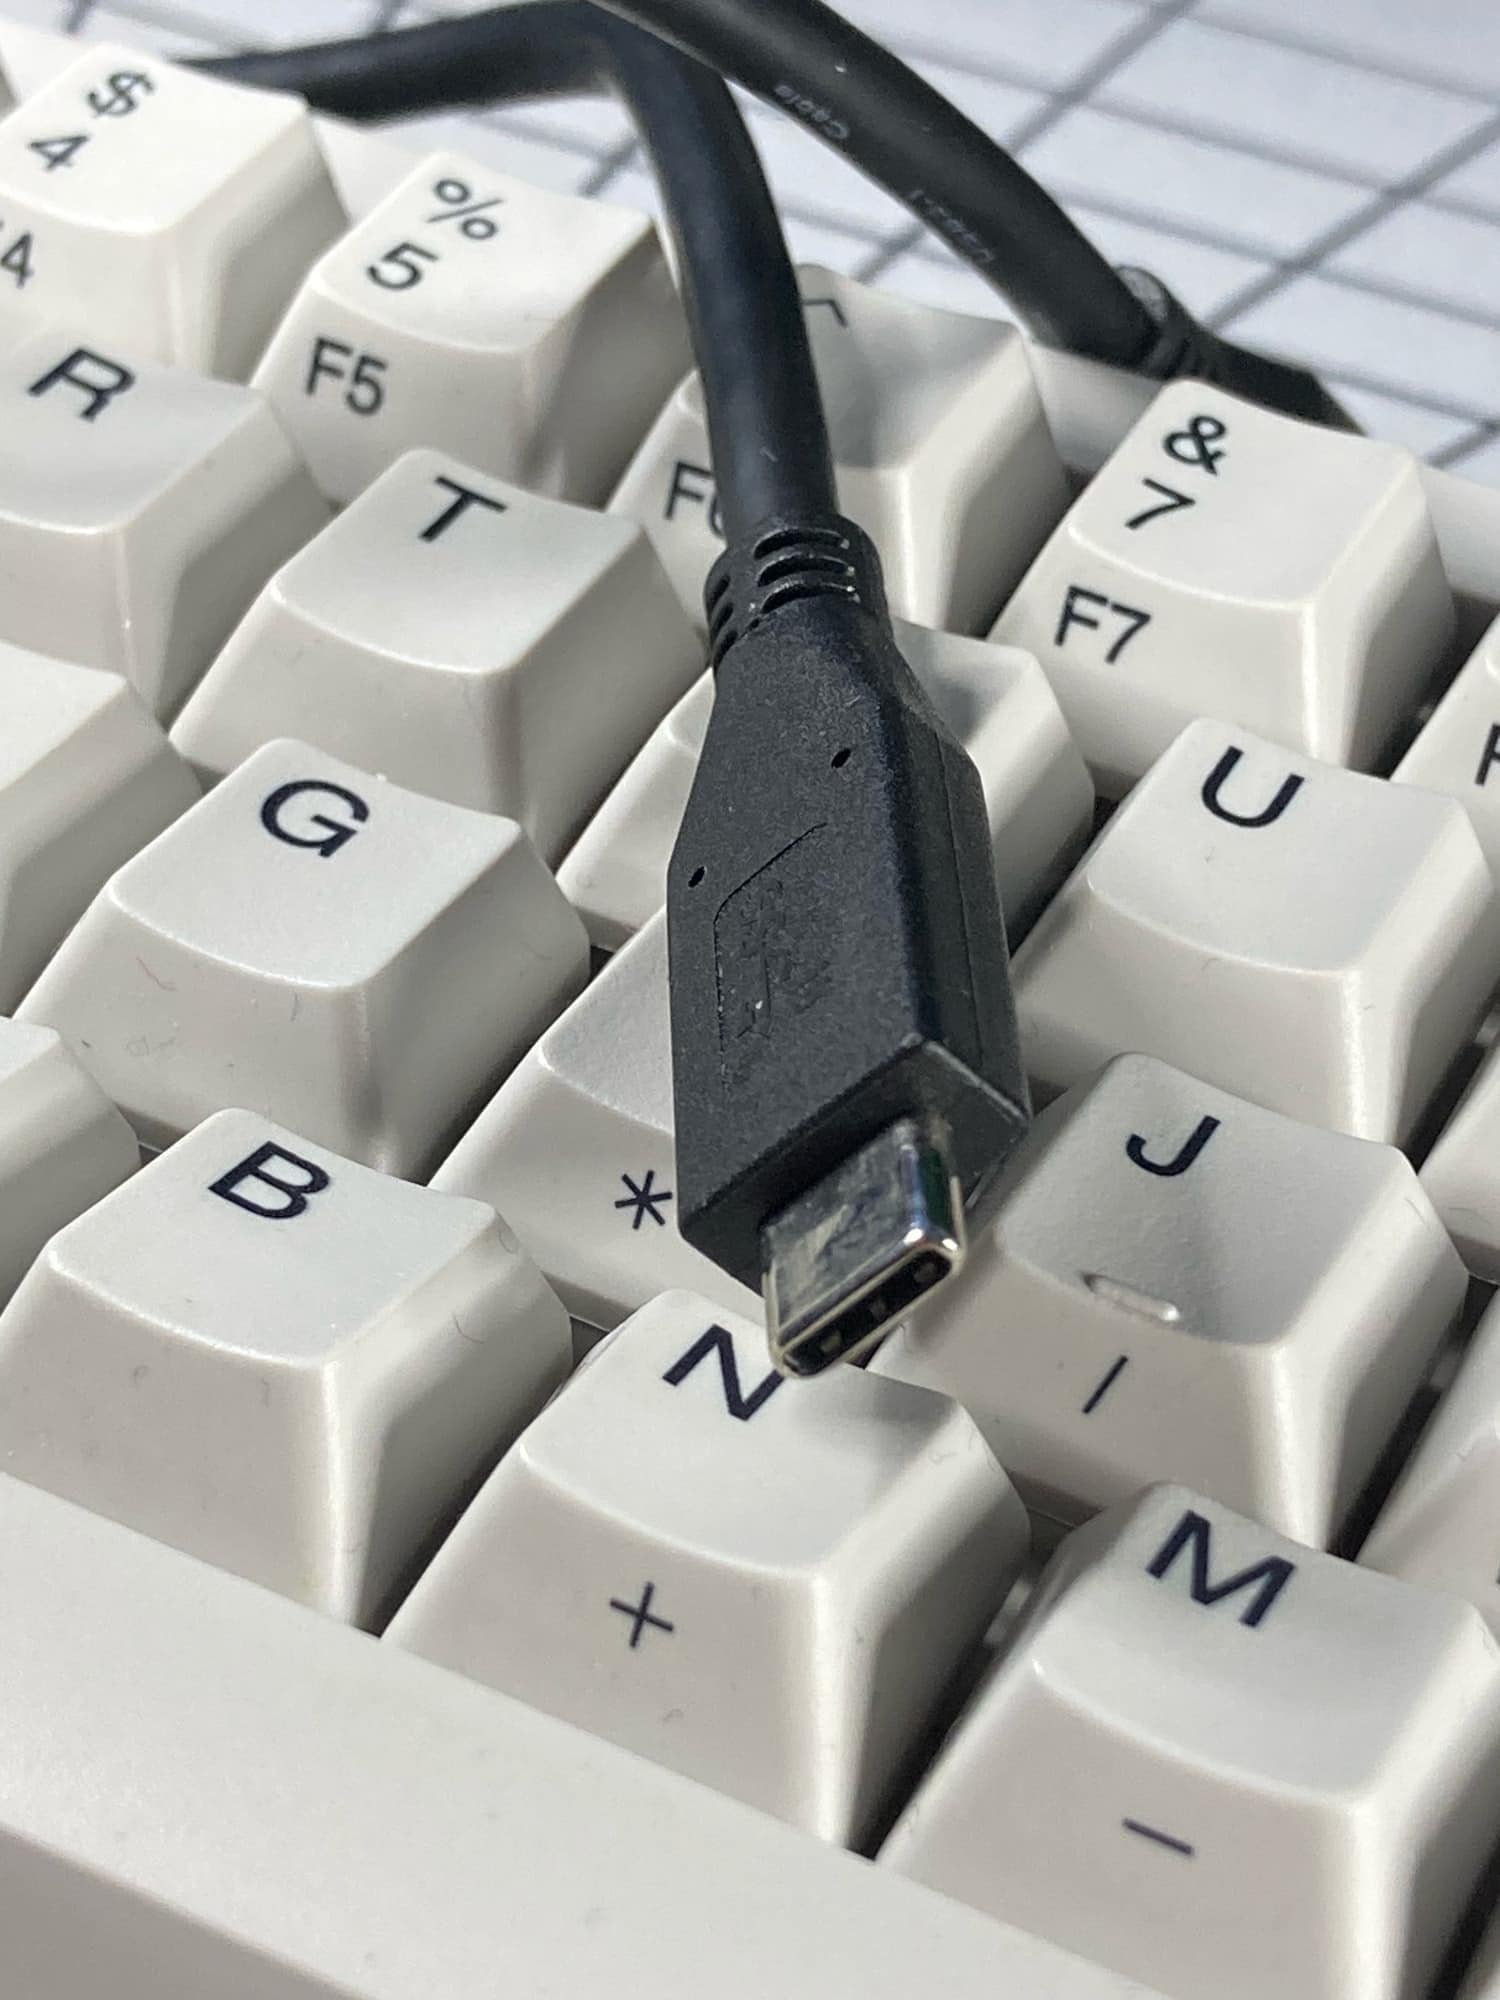 Cables USB-C: gástate un poco más para obtener mejor calidad y mayor duración. 